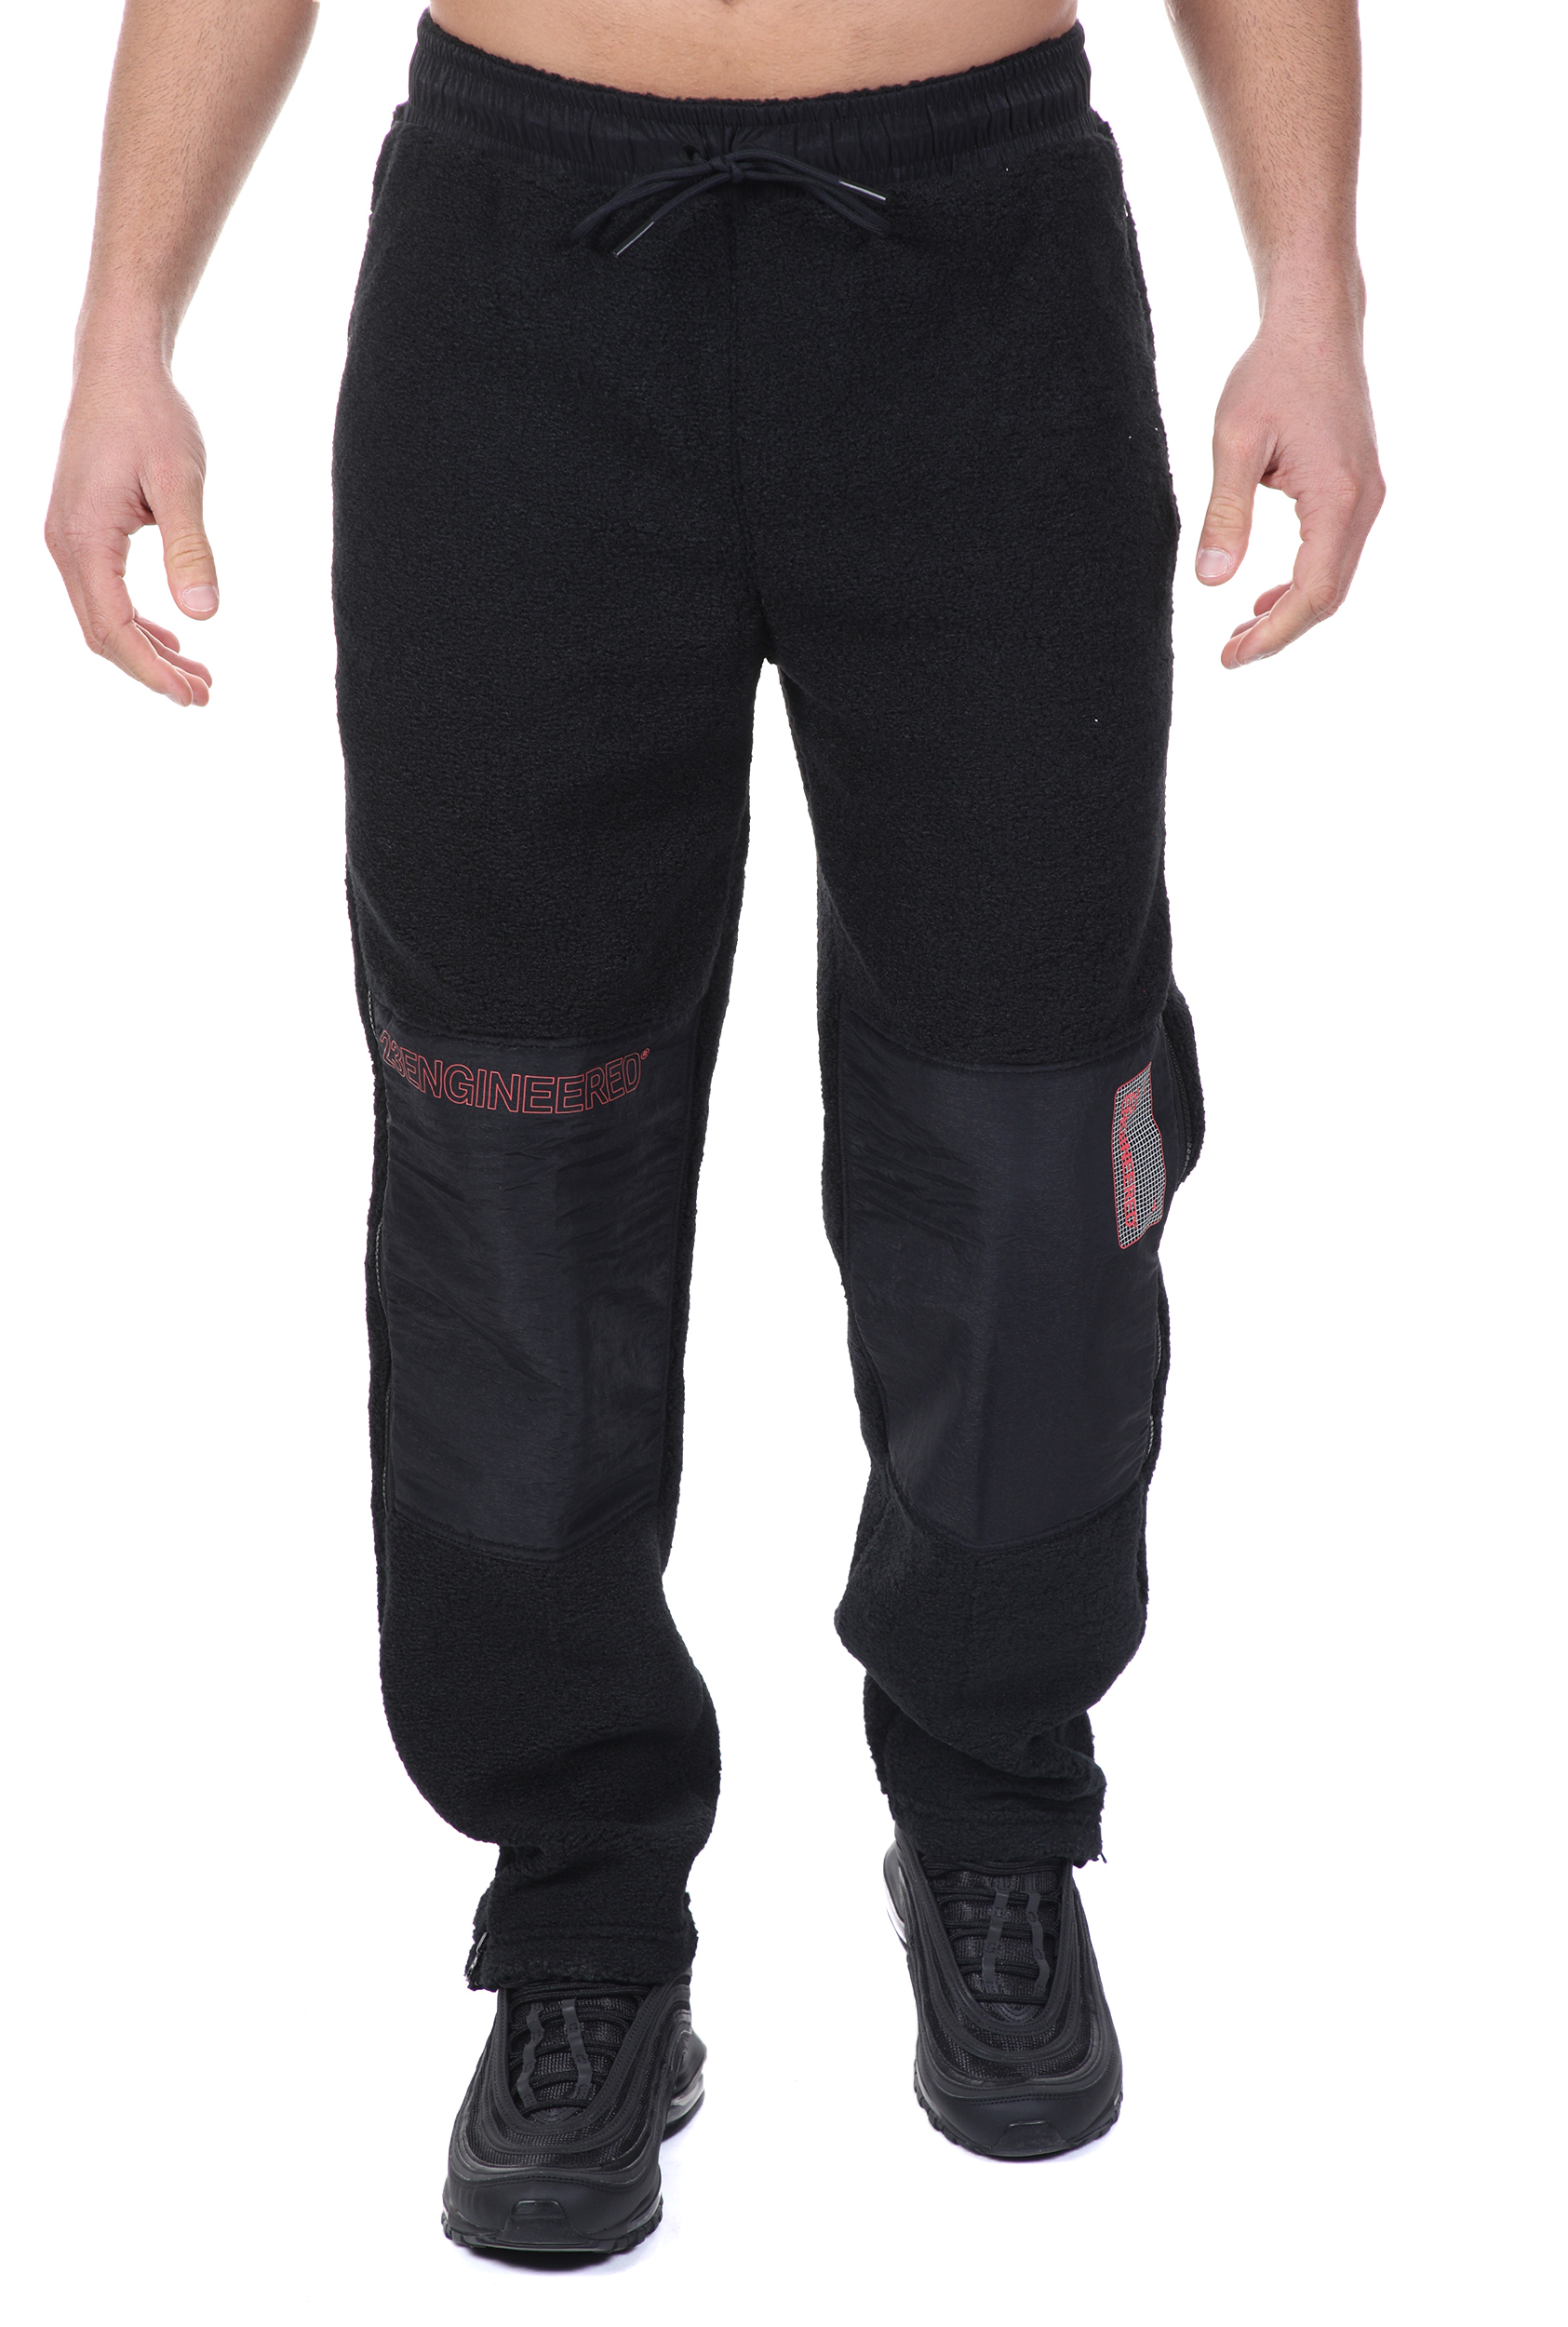 Ανδρικά/Ρούχα/Αθλητικά/Φόρμες NIKE - Ανδρικό παντελόνι φόρμας NIKE J 23ENG ZIP FLC μαύρο